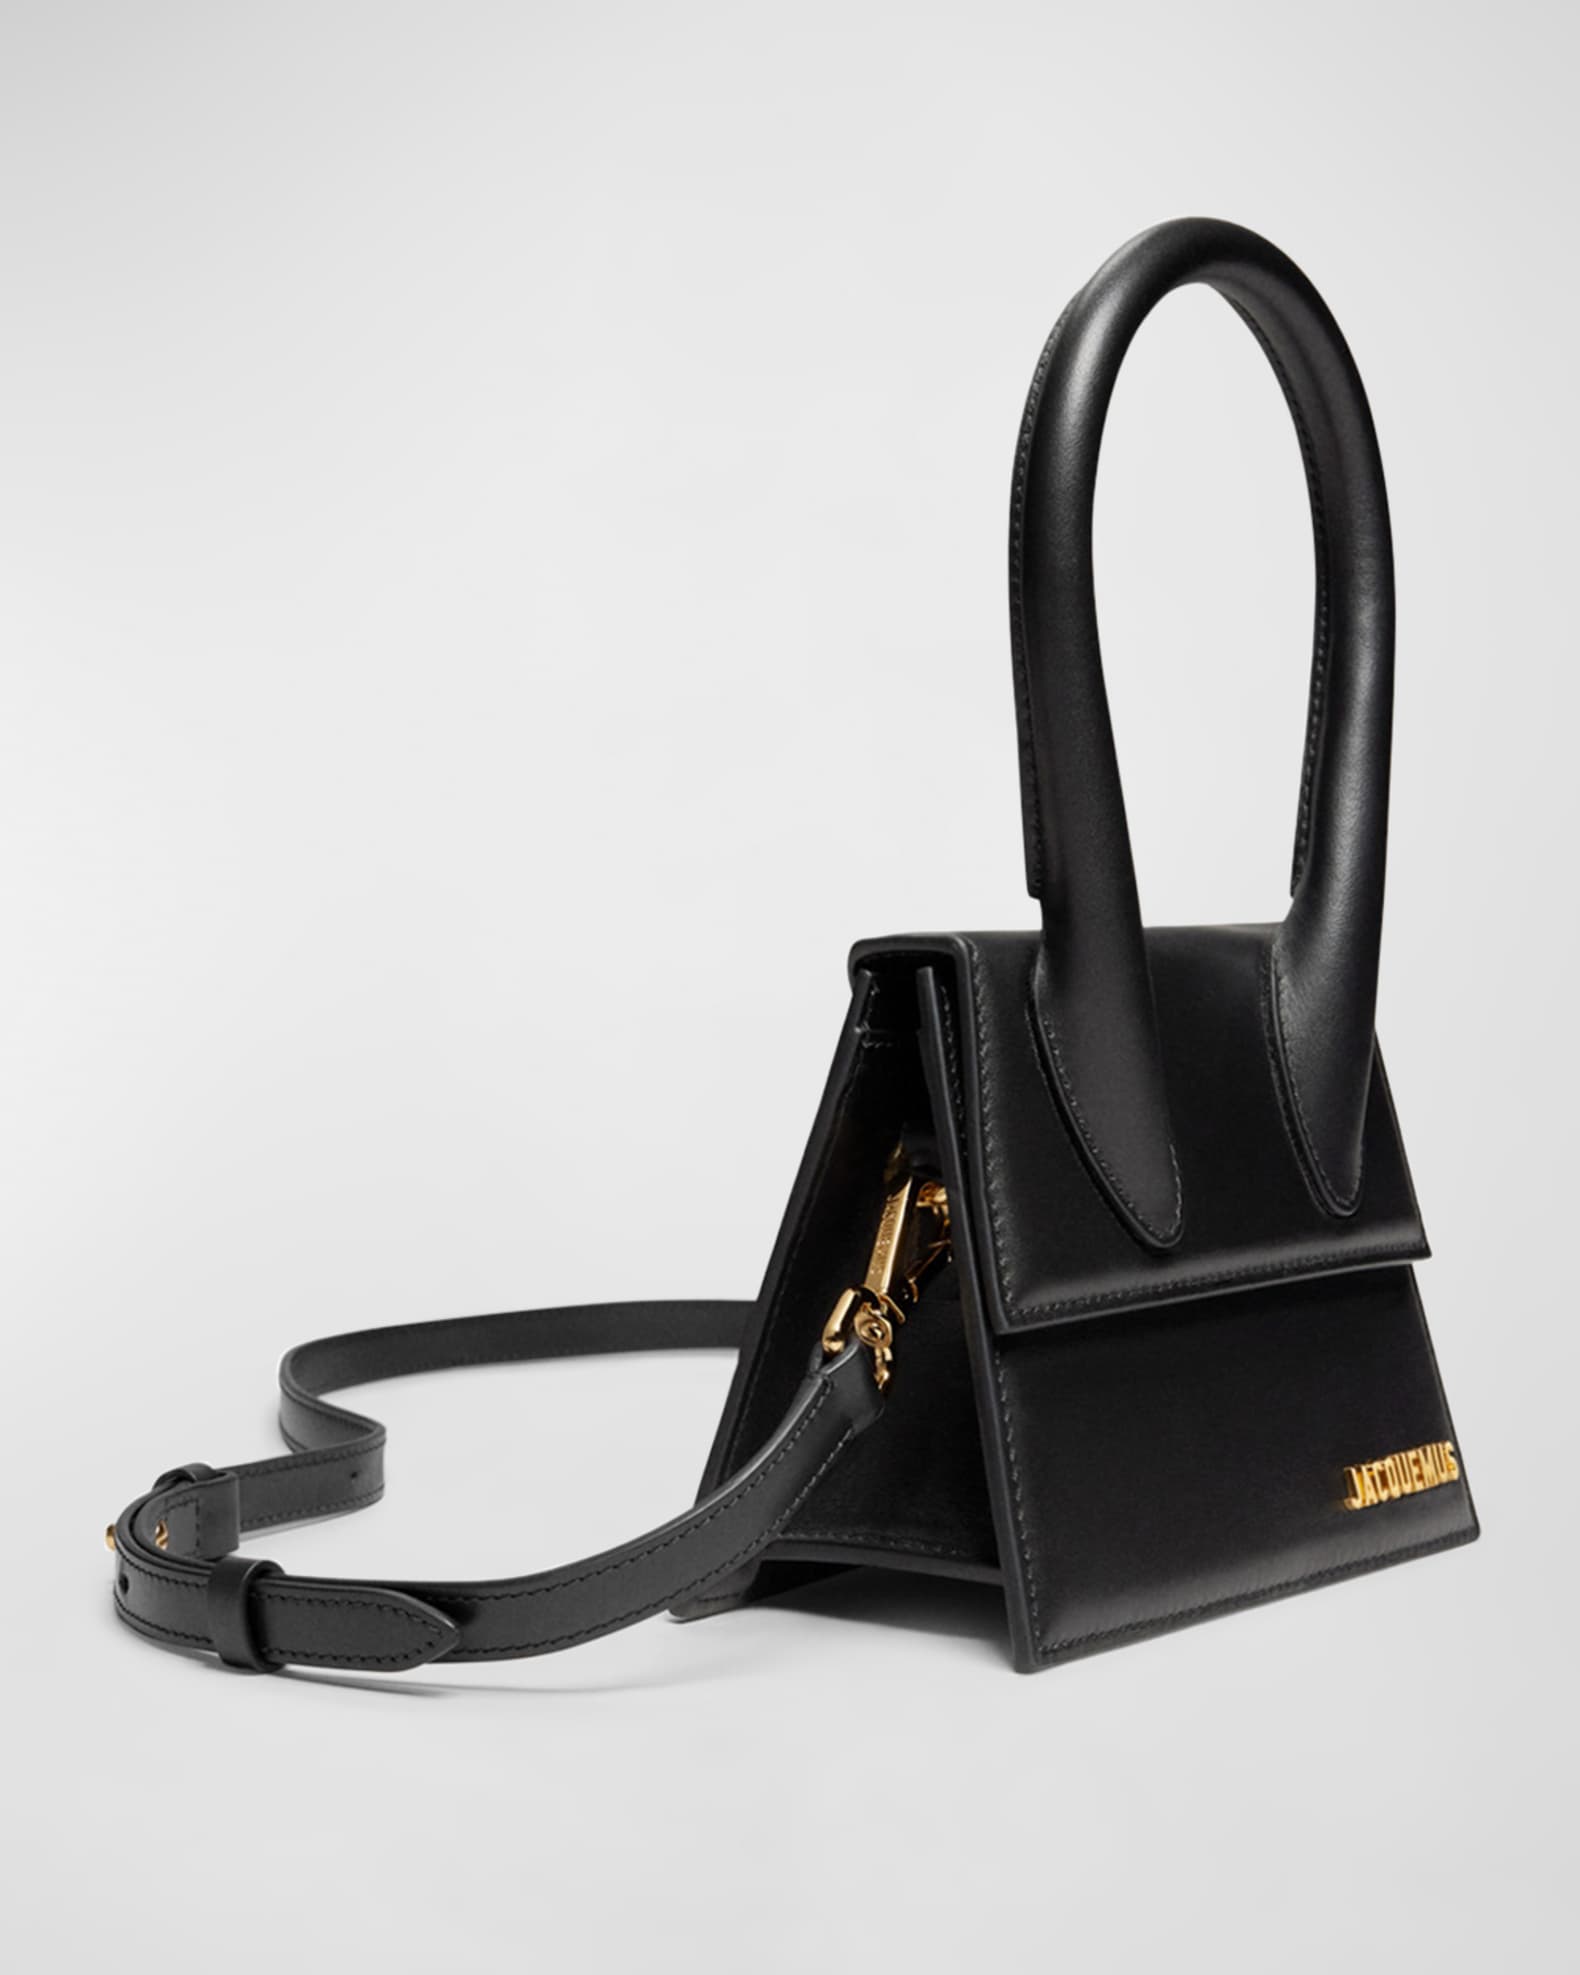 Jacquemus Le Chiquito Moyen Top-Handle Bag | Neiman Marcus